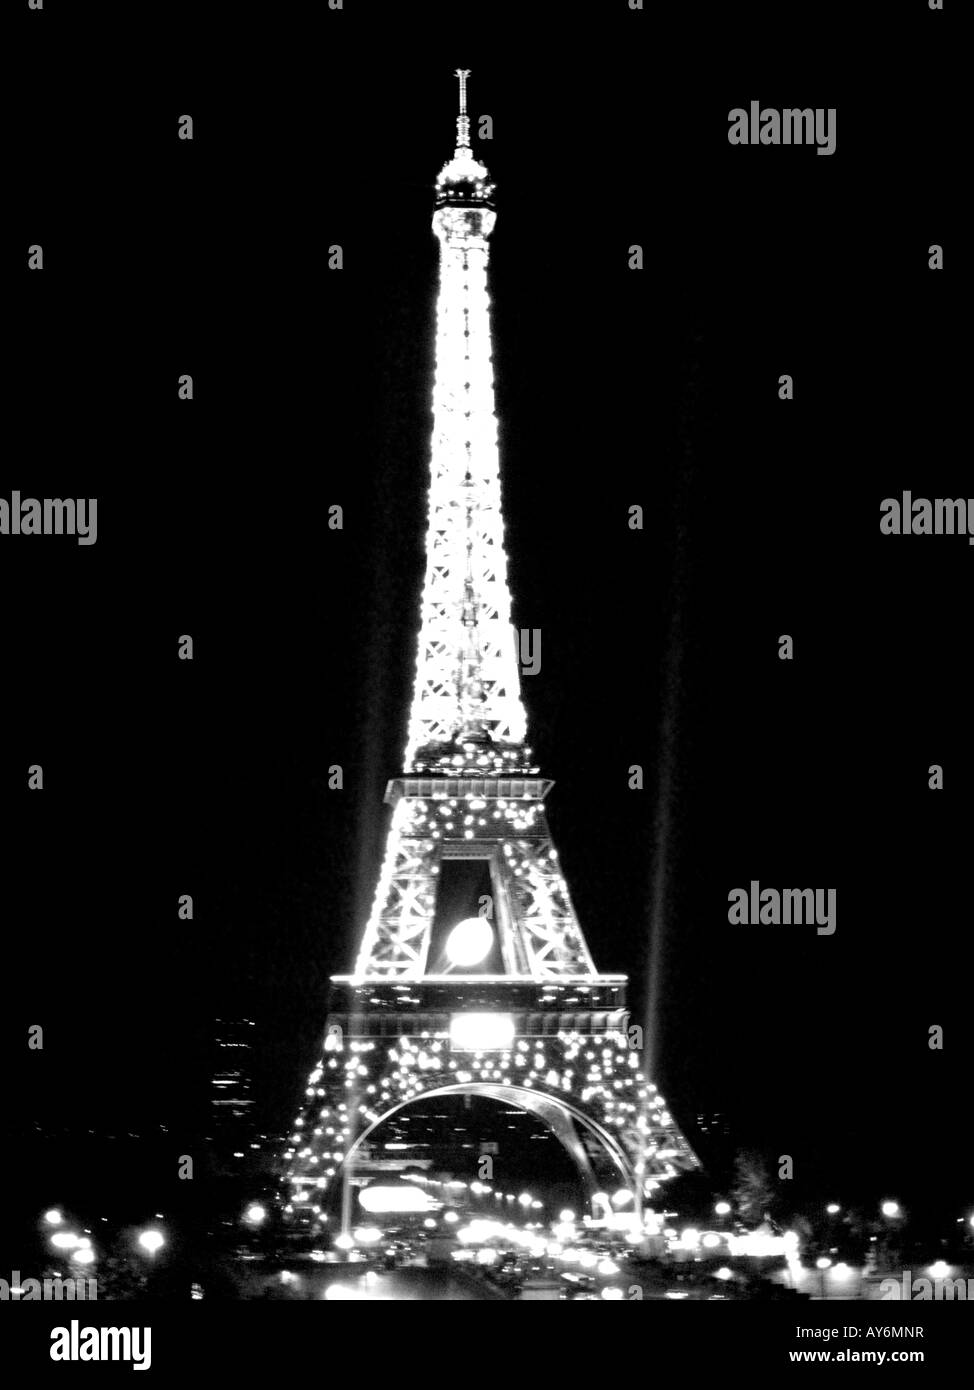 Image désaturée en noir et blanc de la Tour Eiffel à Paris la nuit durant la Coupe du Monde de Rugby 2007 Banque D'Images